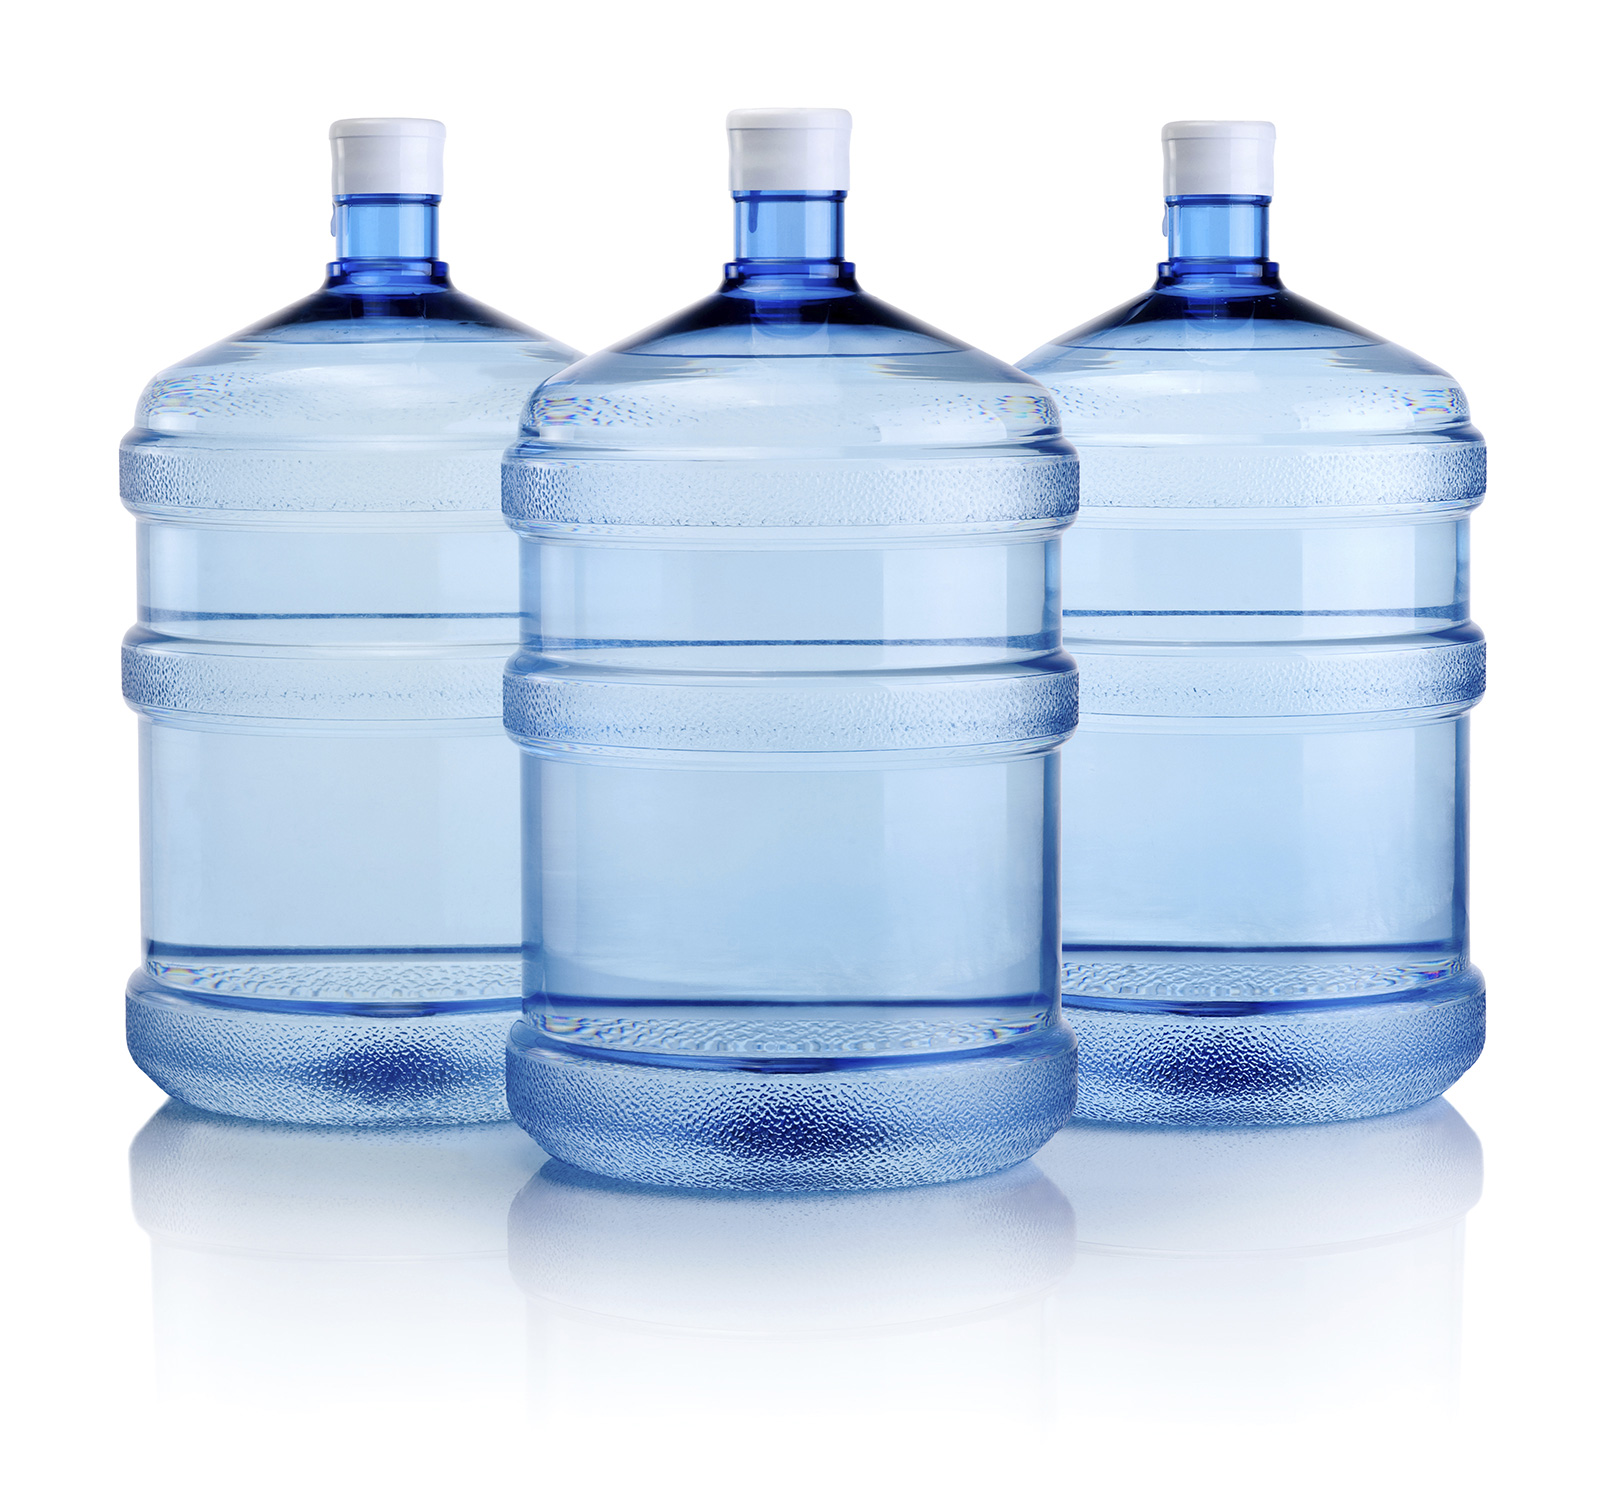 Питьевая вода для офиса. Бутилированная вода. Бутылка для воды. Вода в бутылях. Бутилированная вода бутылка.